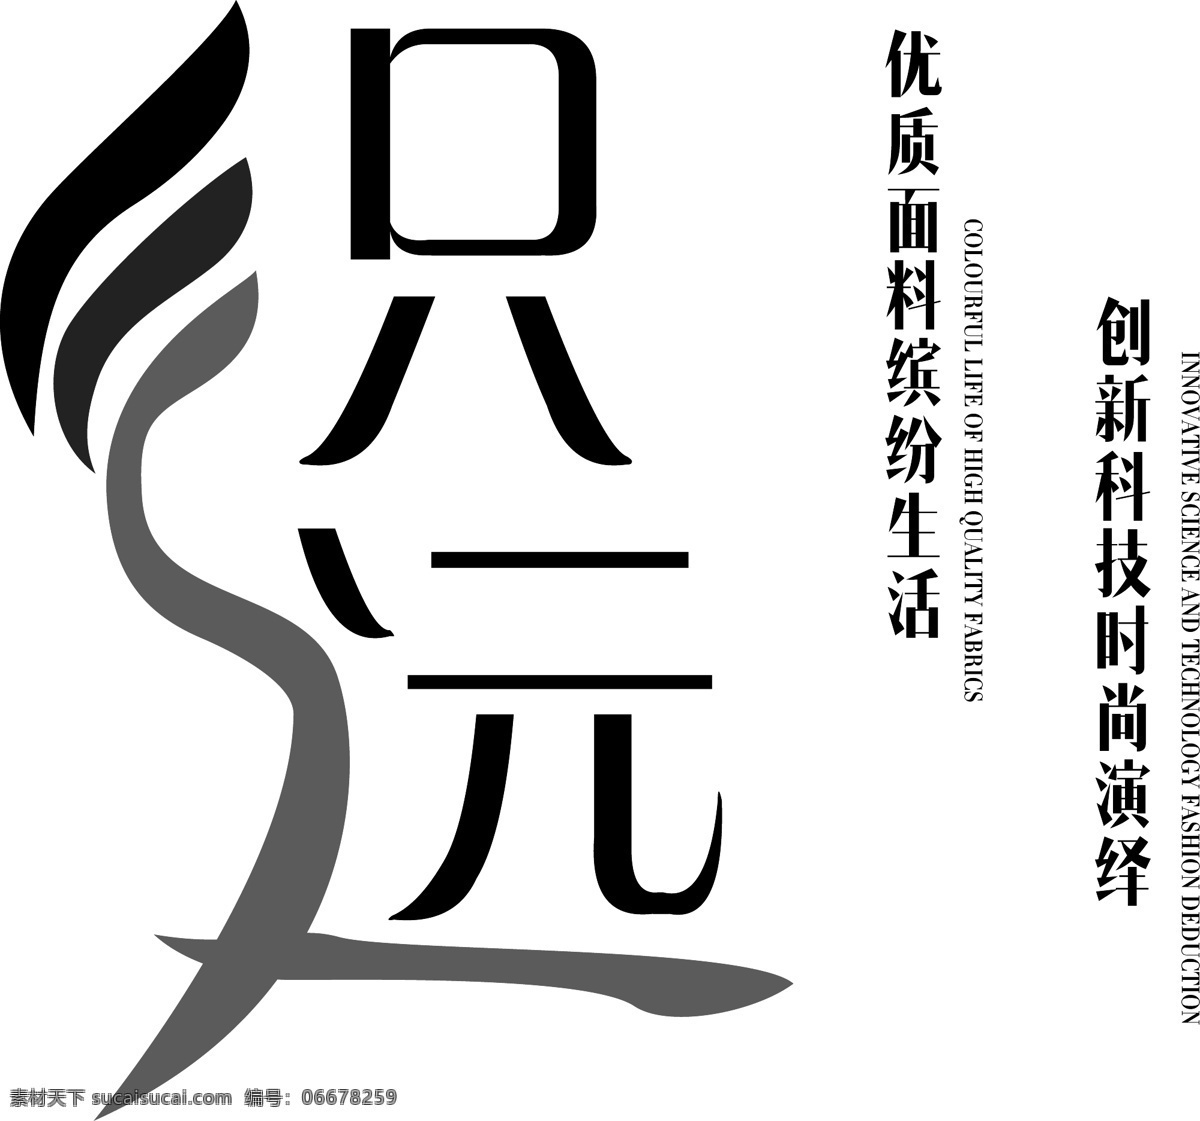 织 远 纺织 企业 logo 标志设计 字体设计 商标 模板